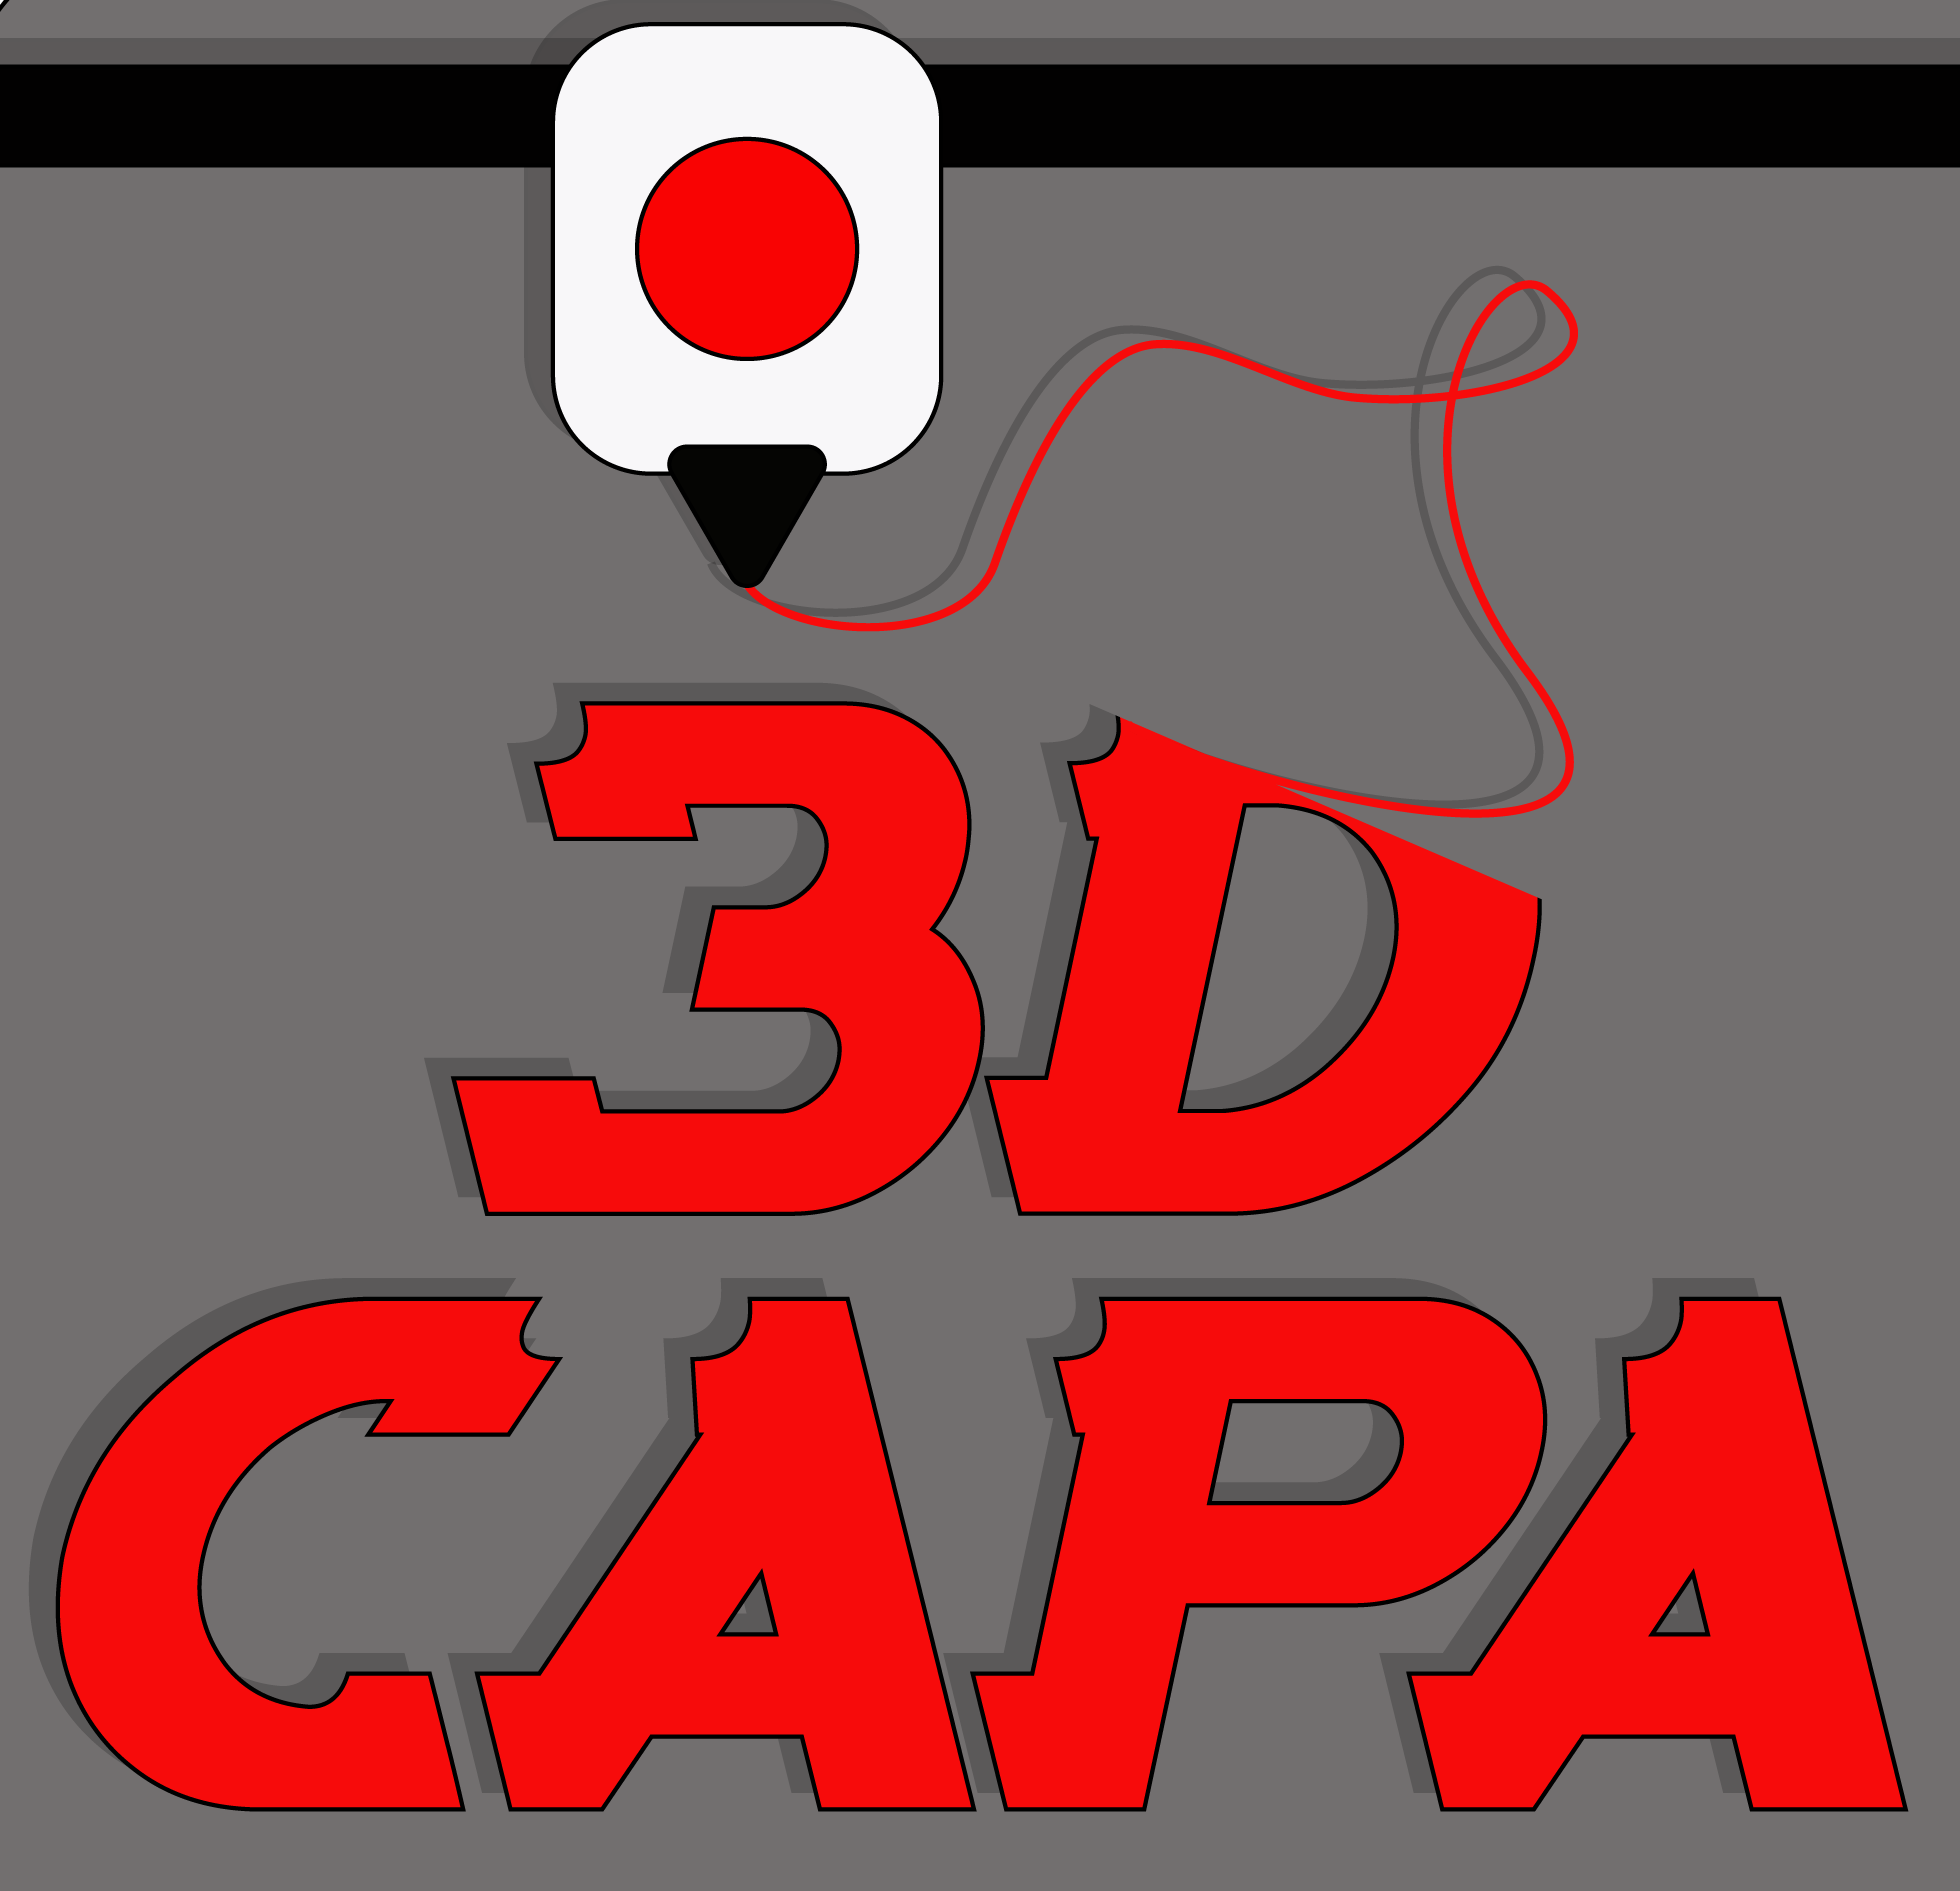 3D Capa